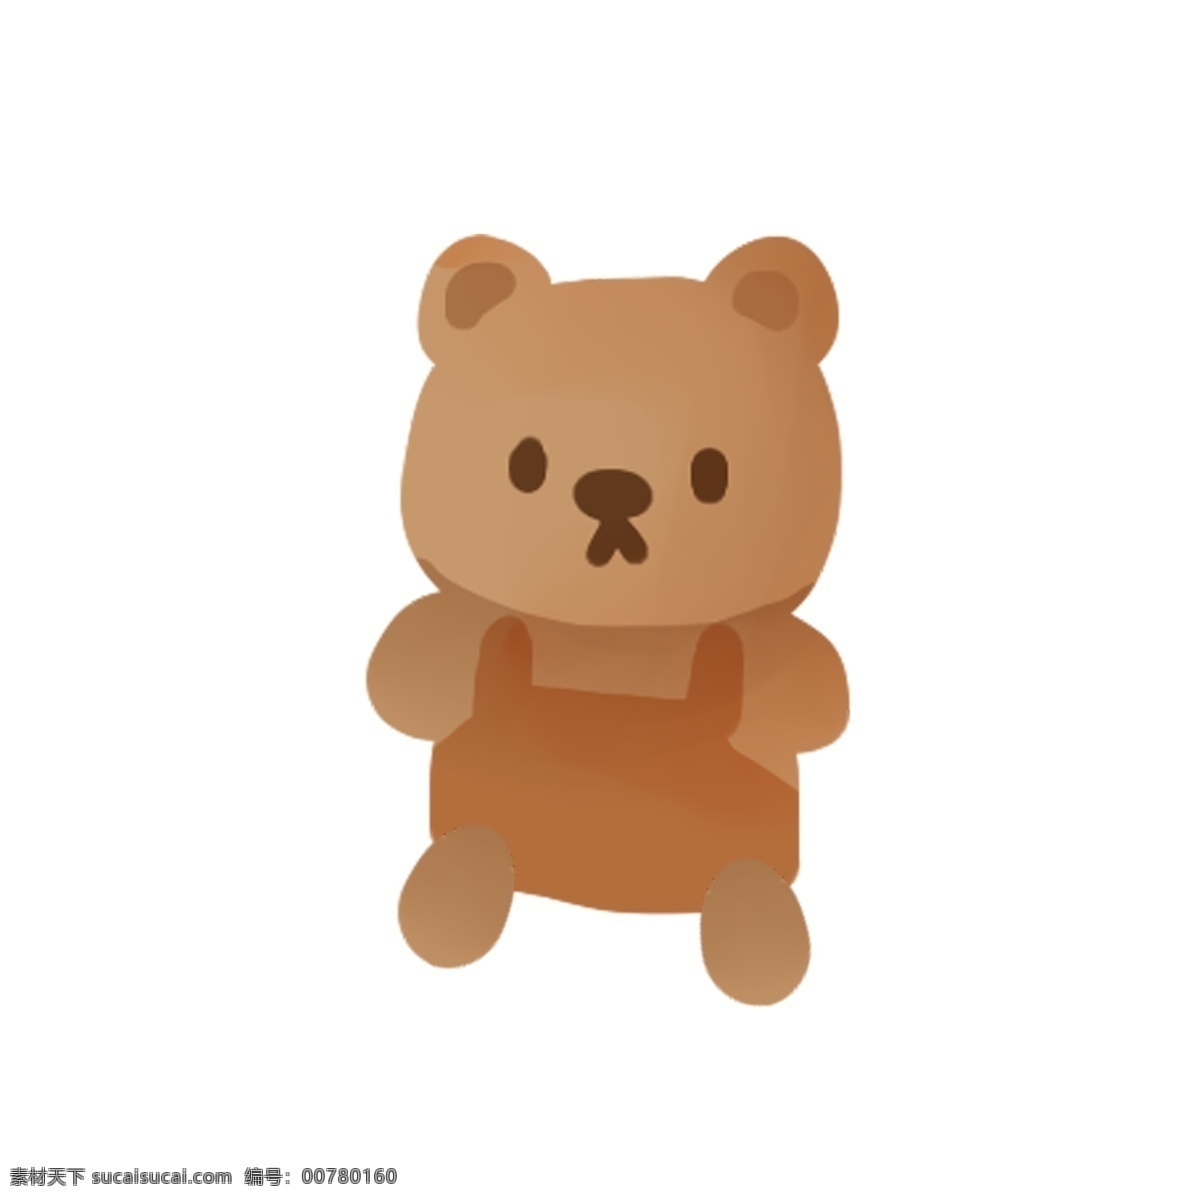 小 熊 公仔 卡通 可爱小熊公仔 小熊玩具 可爱 棕色 玩具 手绘小熊玩具 卡通小熊公仔